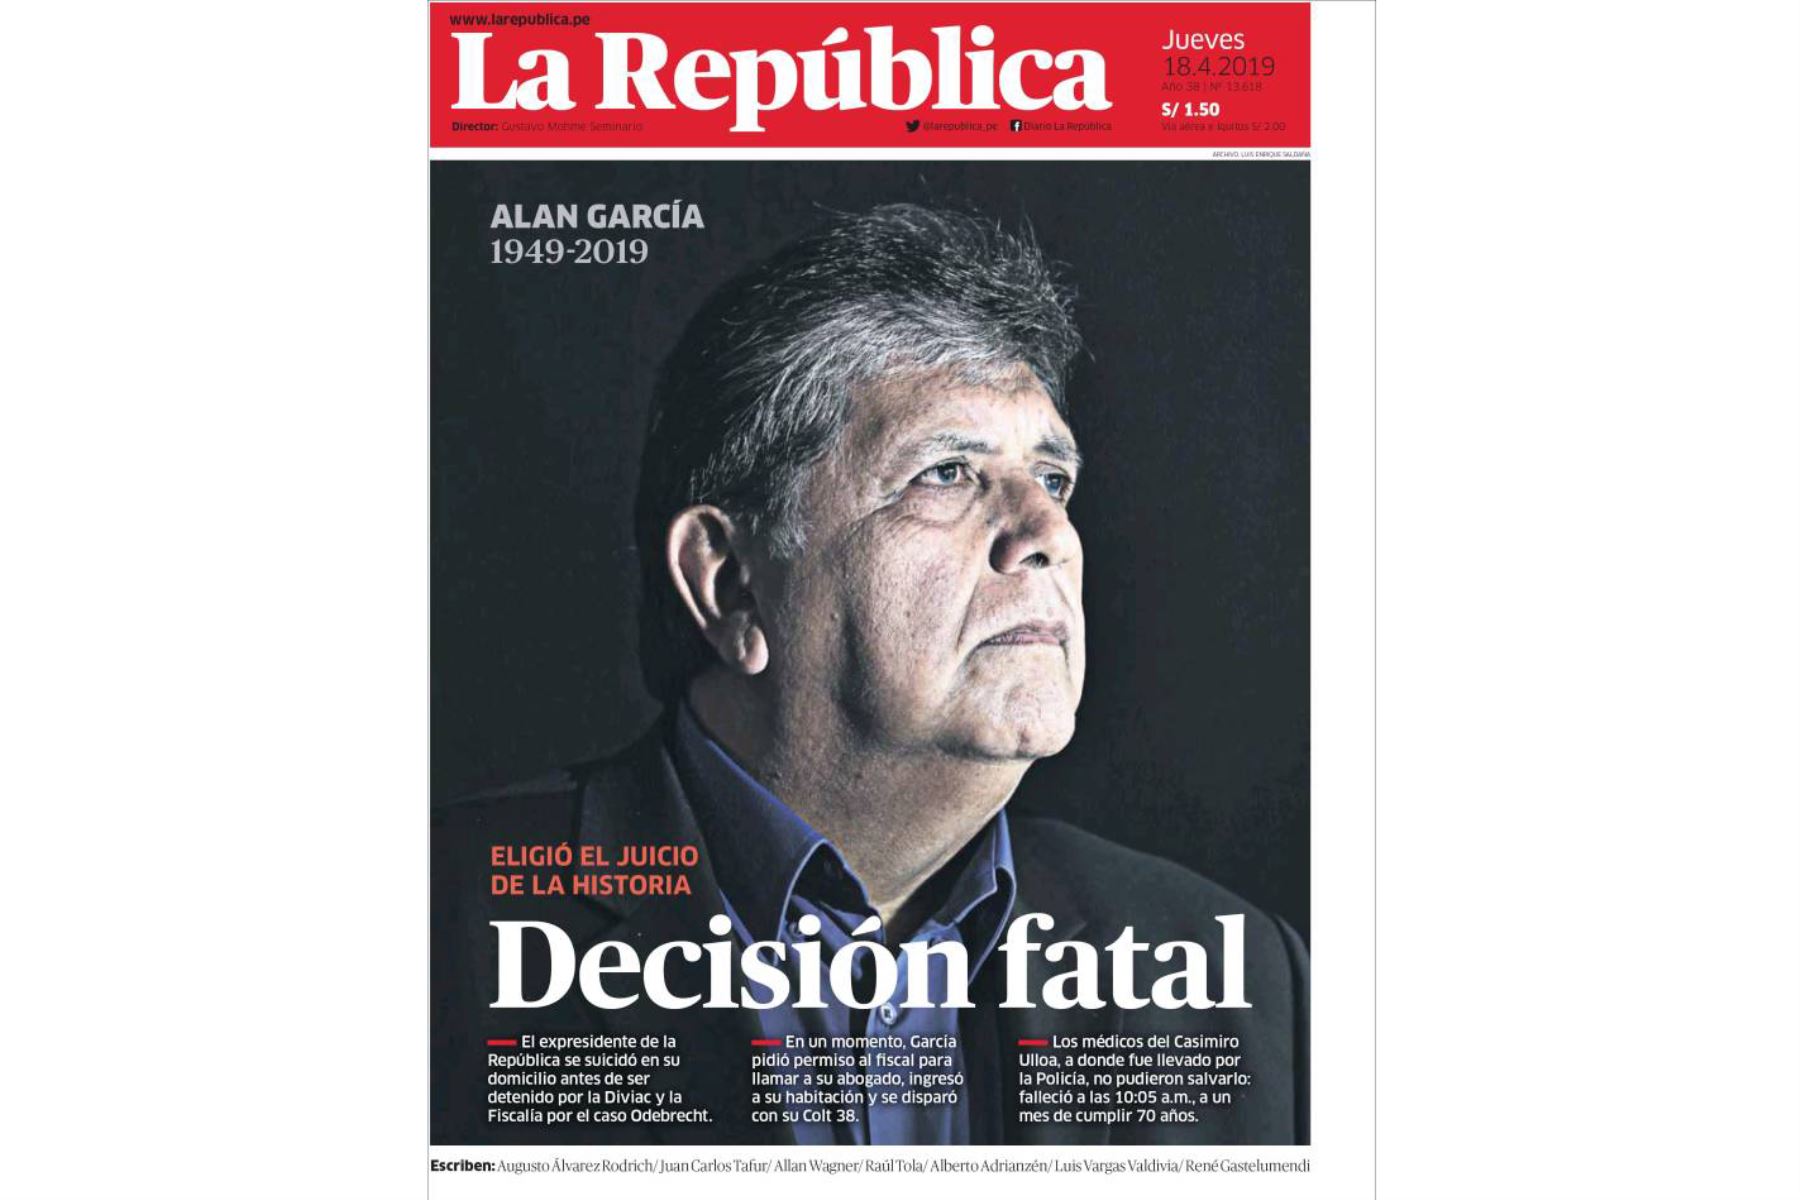 Alan García: Las portadas de los diarios peruanos